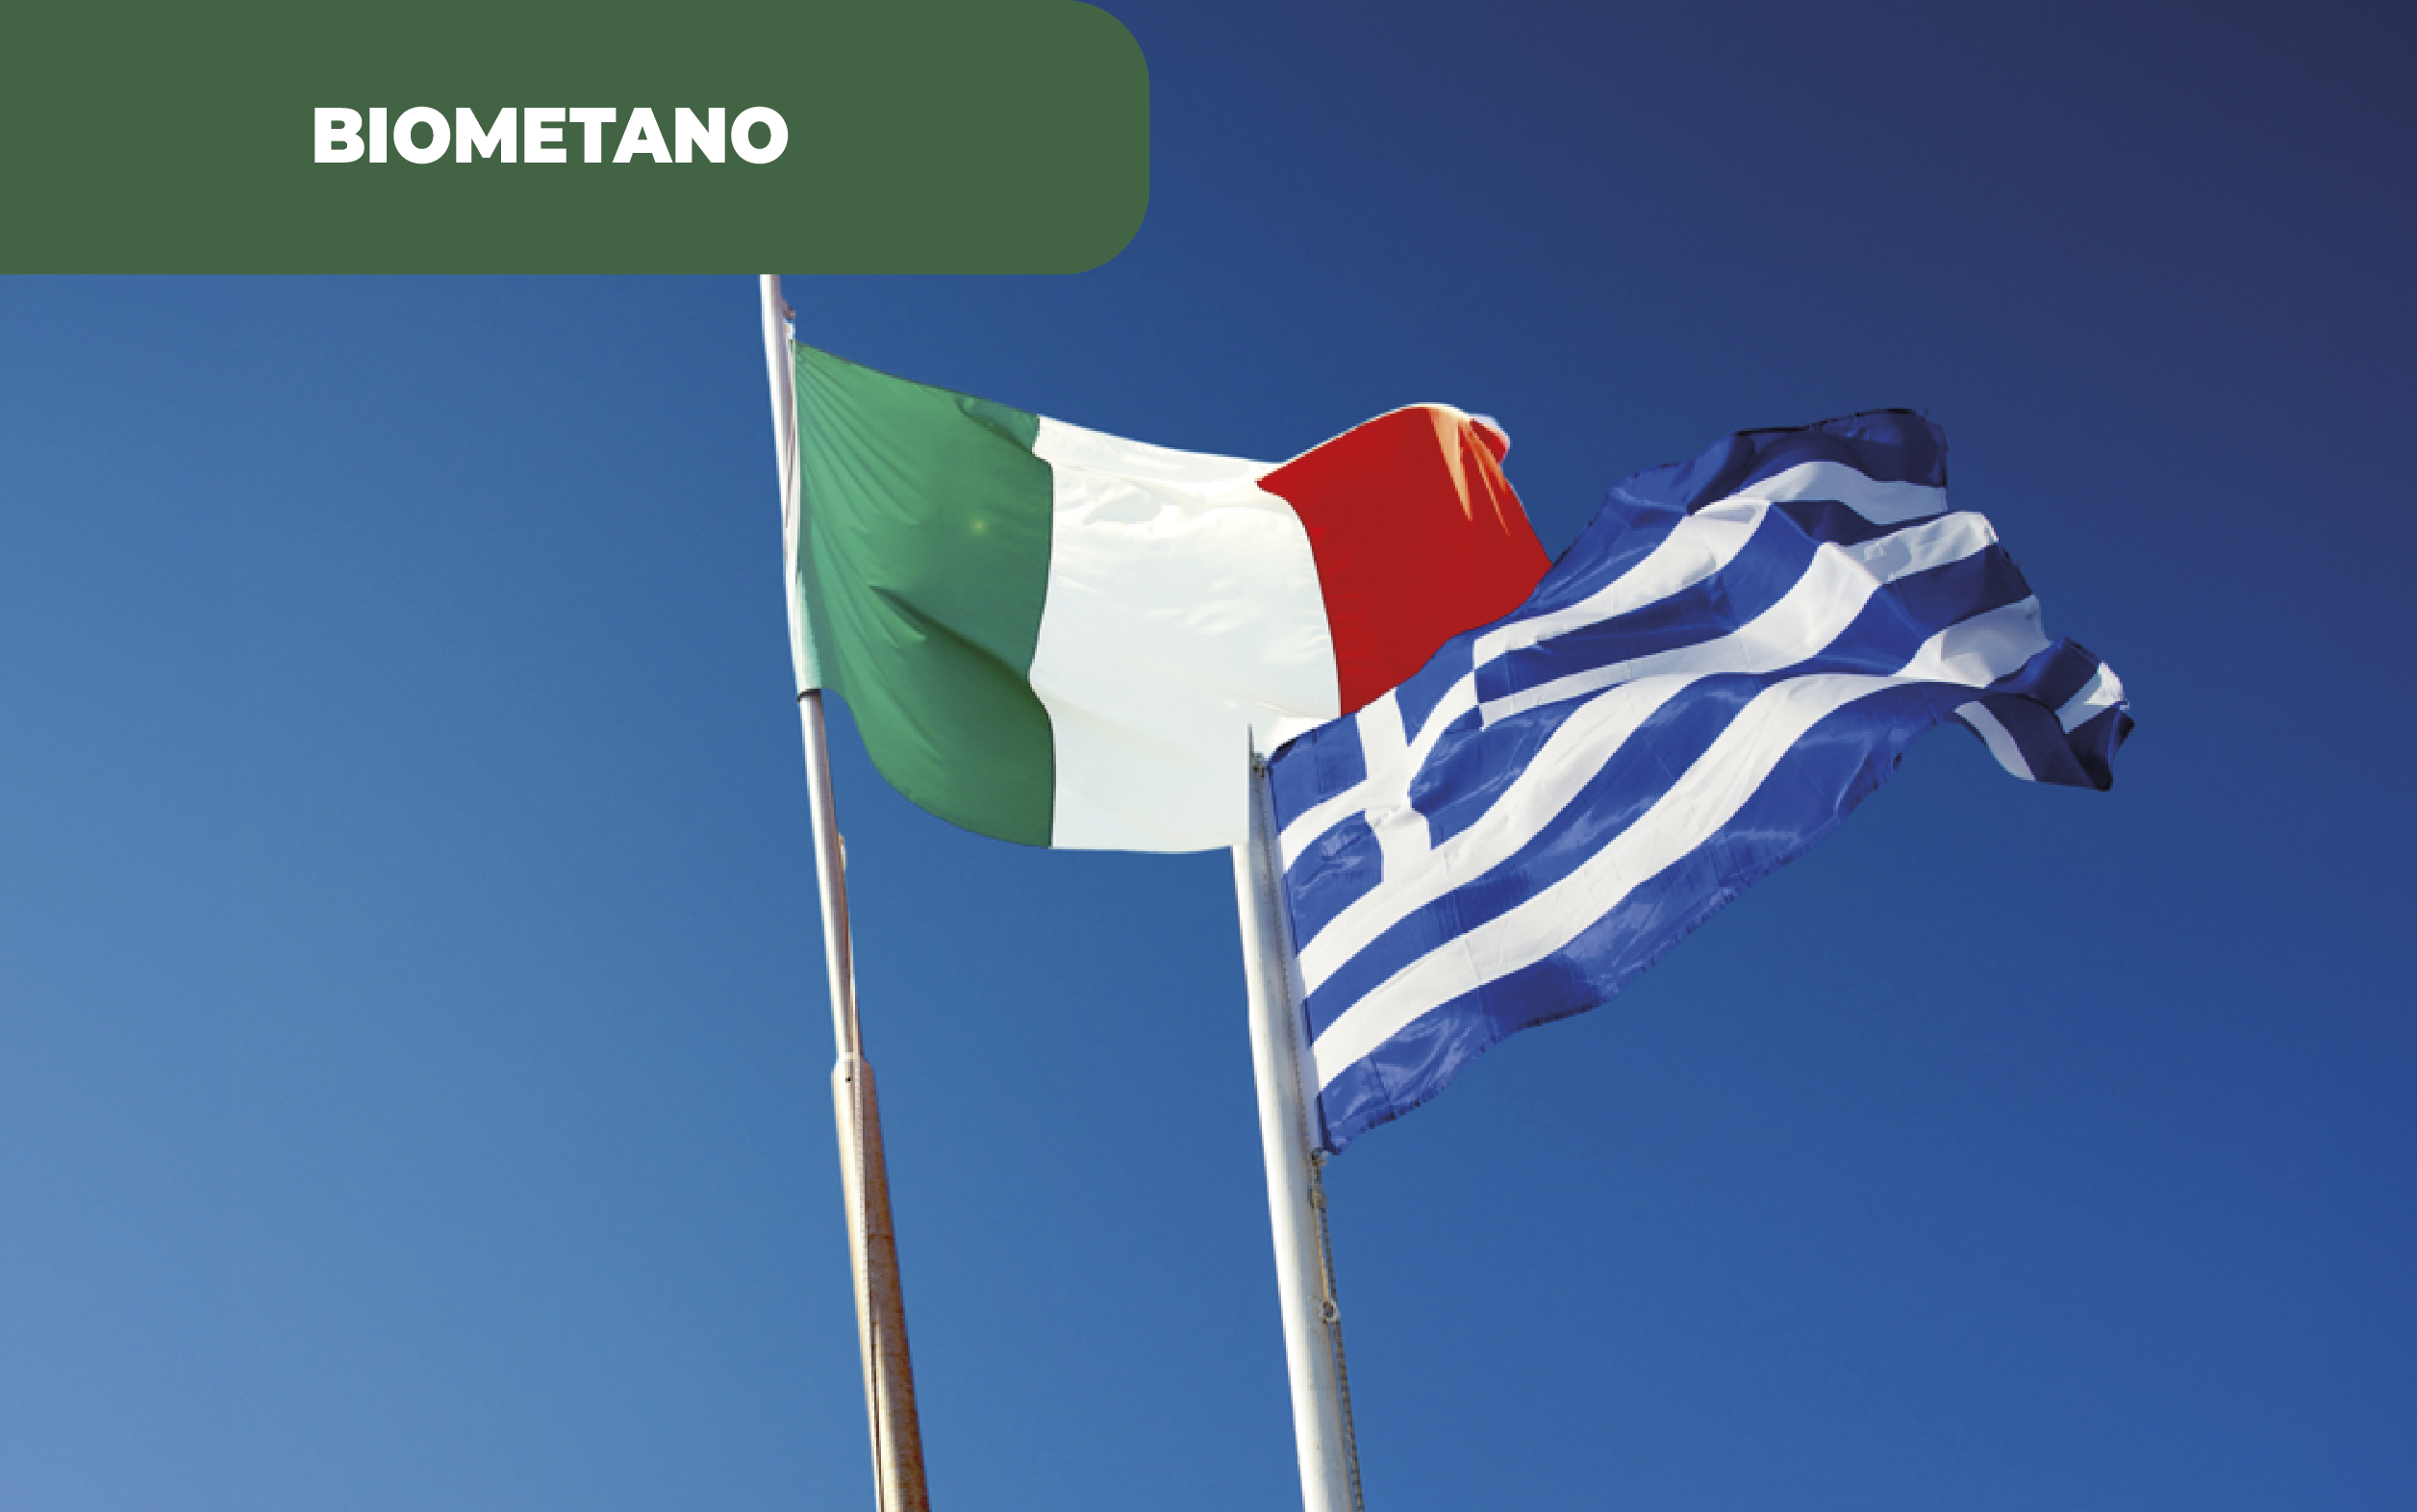 Imagem ilustrativa das bandeiras dos países Itália e Grécia. A Itália e Grécia apostam no biometano, aumentando a capacidade e distribuição da rede de gás.